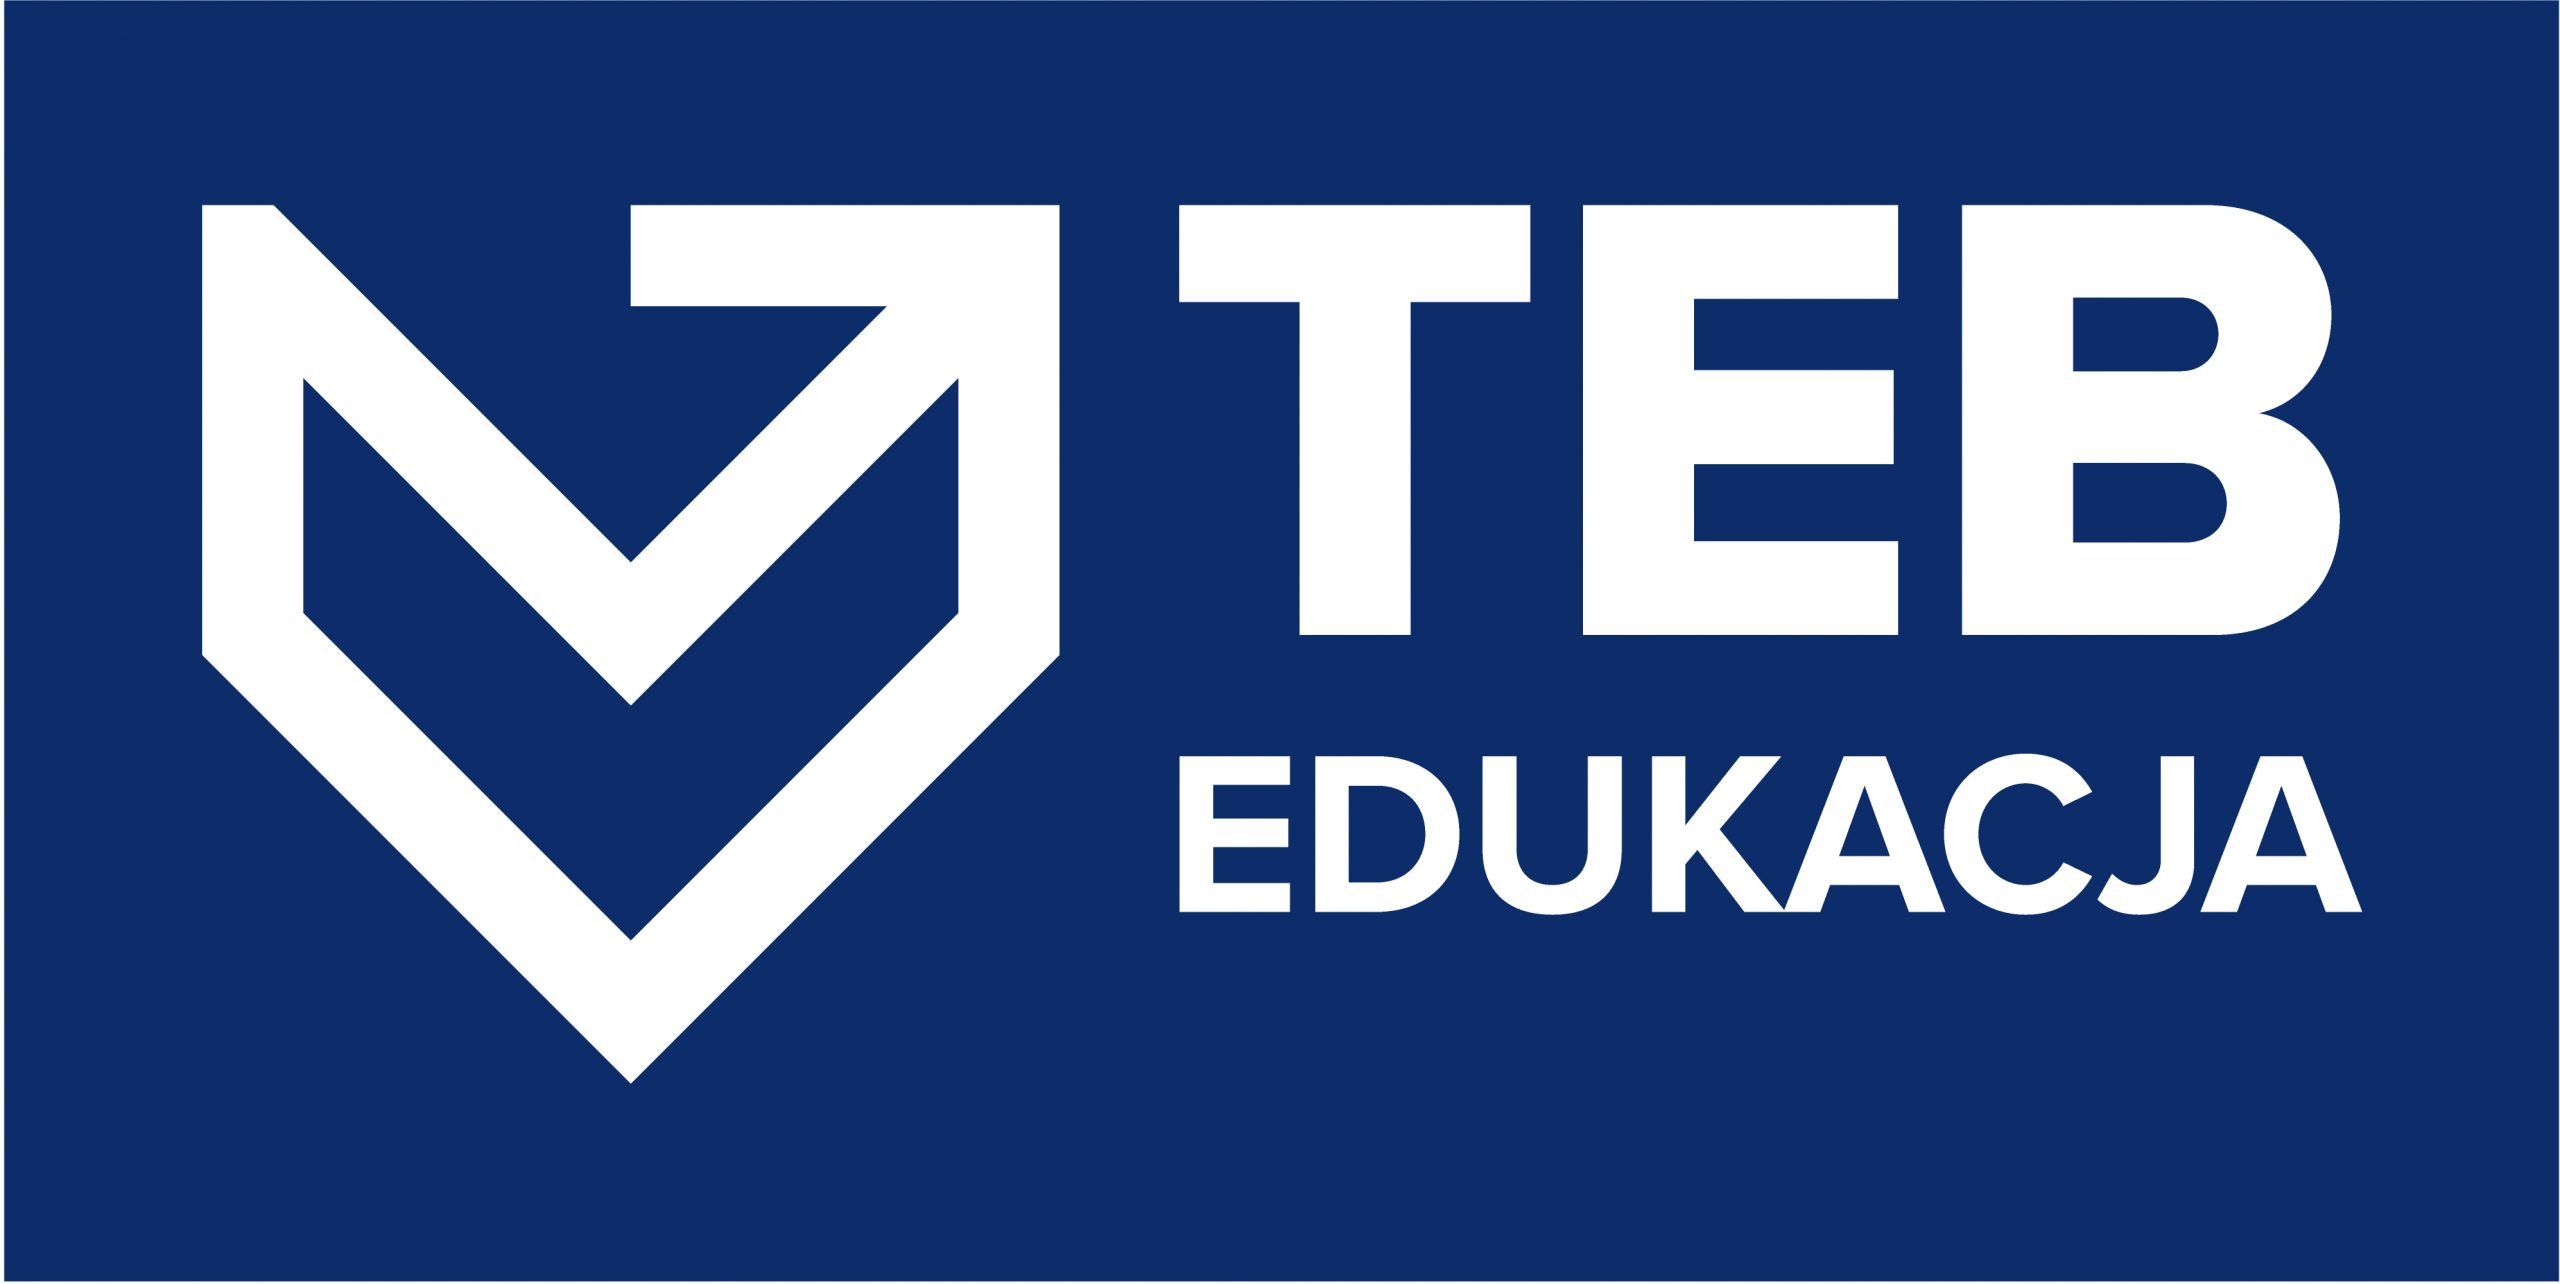 Teb-Edukacja: Nauczyciel Przedmiotów Ogólnokształcących